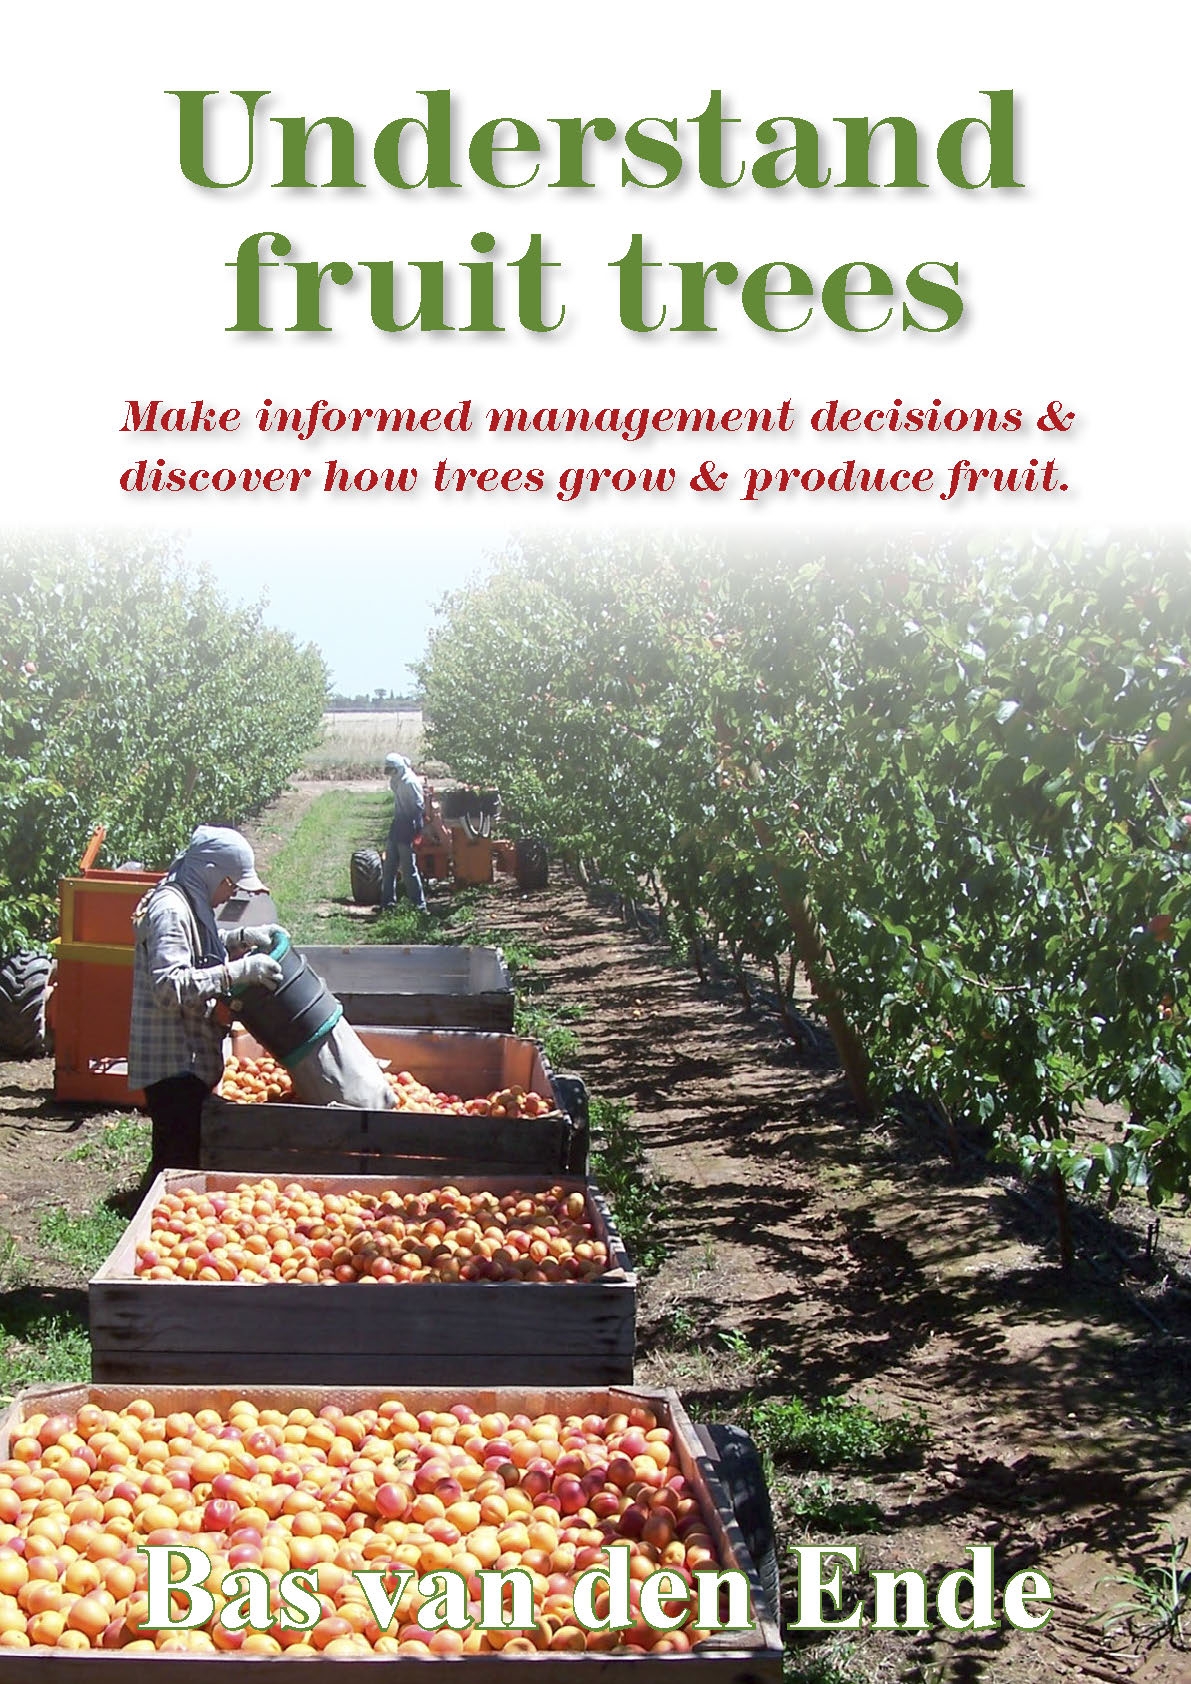 Understand fruit trees